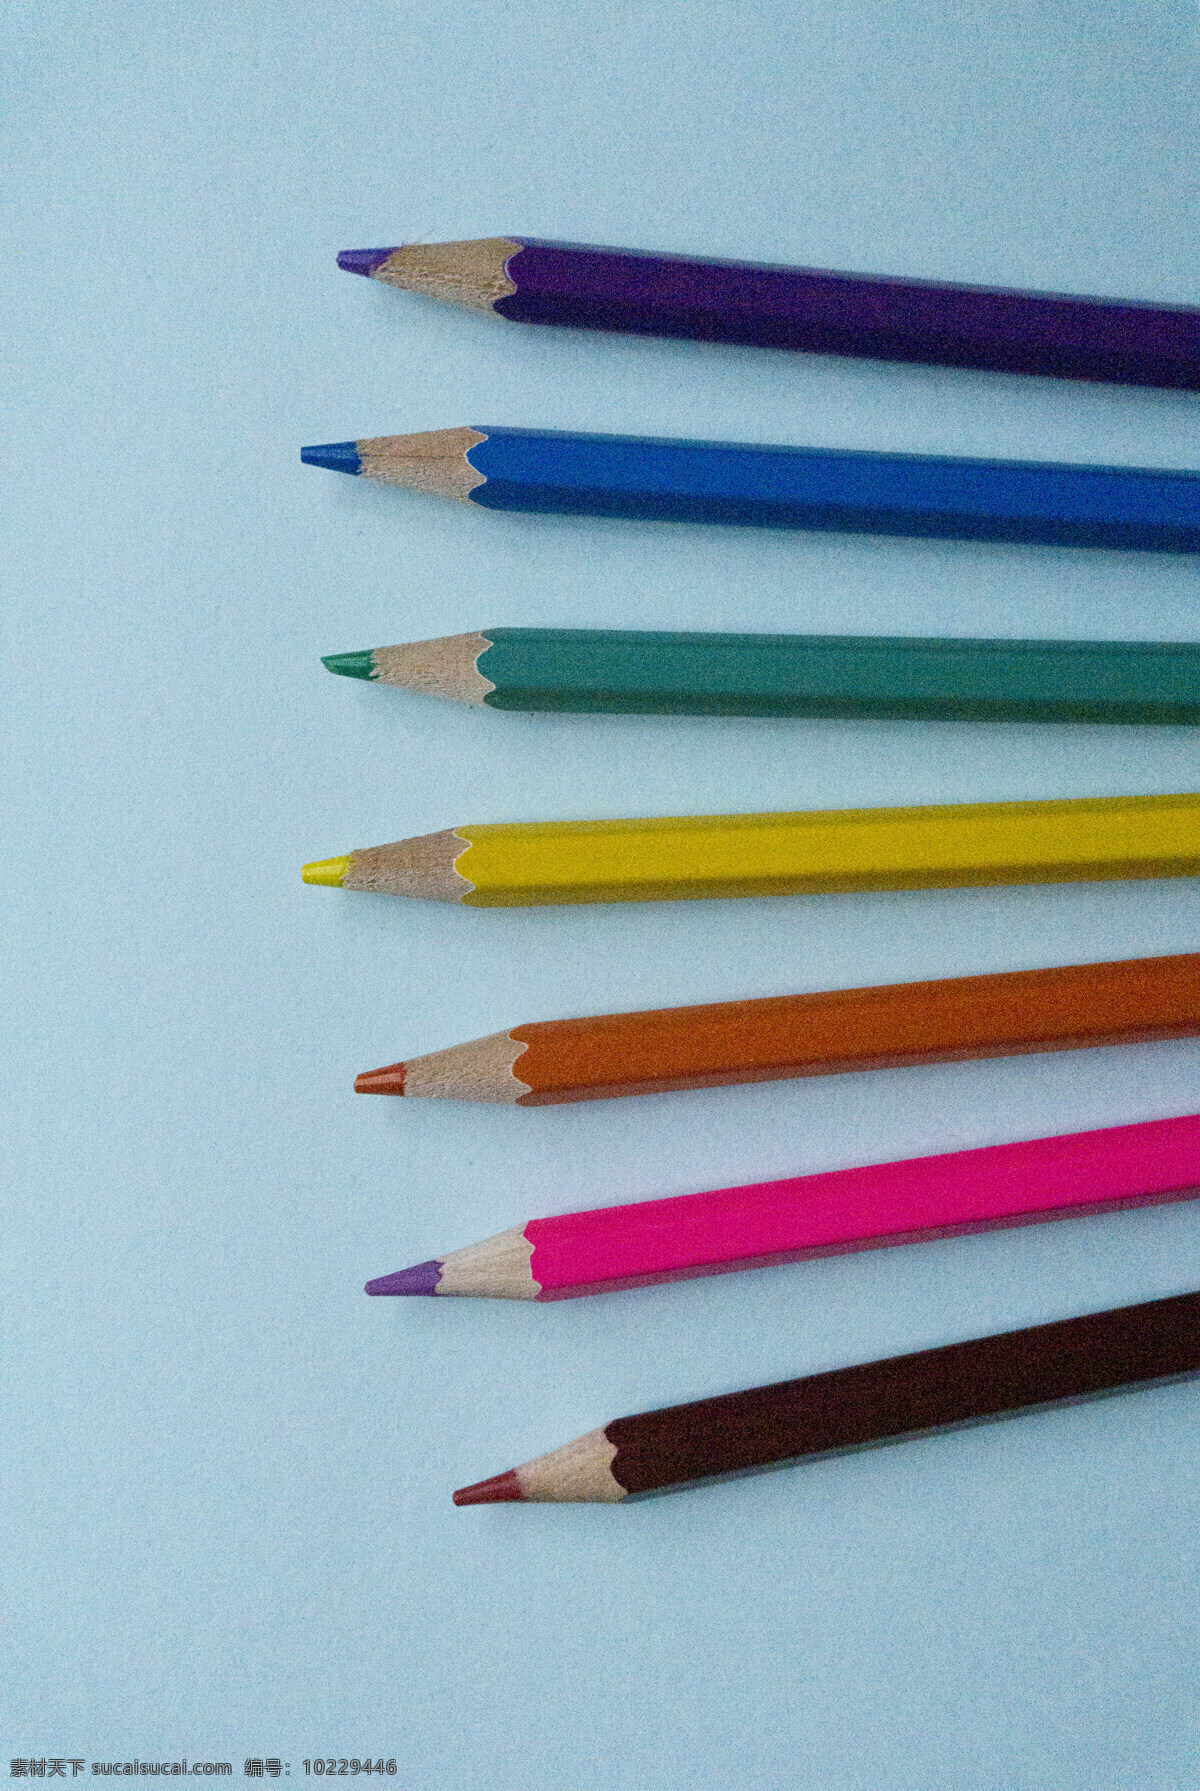 创意 彩色 铅笔 办公用品 多彩 工具 彩色铅笔 彩铅 文具 纯色 美术用品